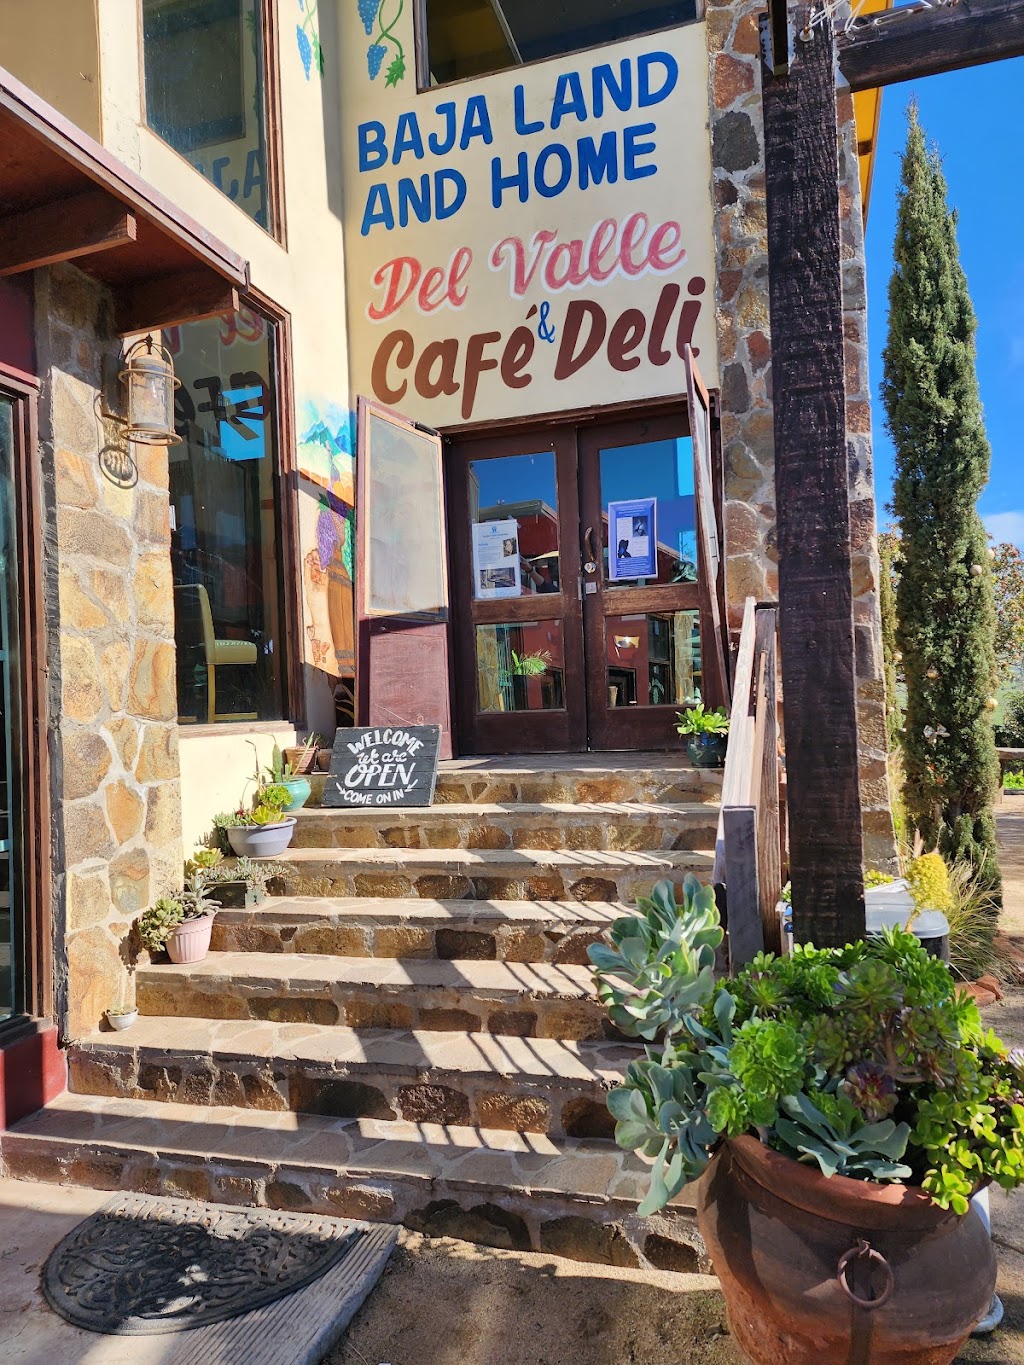 Del Valle Cafe and Deli | Free Road KM 62.5, 22910 La Misión, B.C., Mexico | Phone: (801) 809-5949